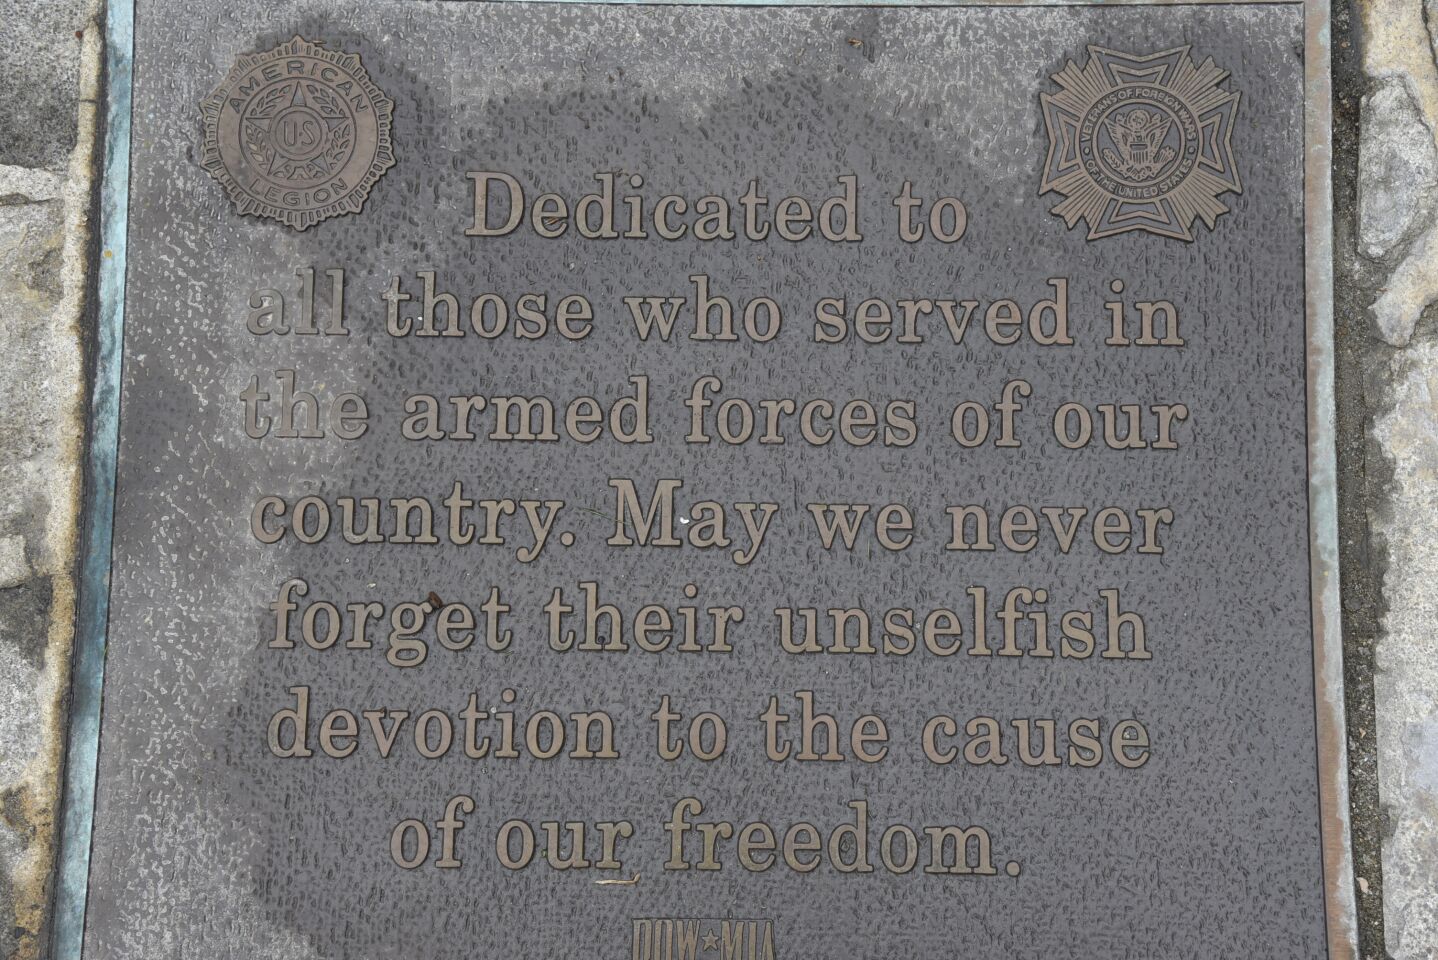 Dedication plaque at Cottonwood Creek Park in Encinitas